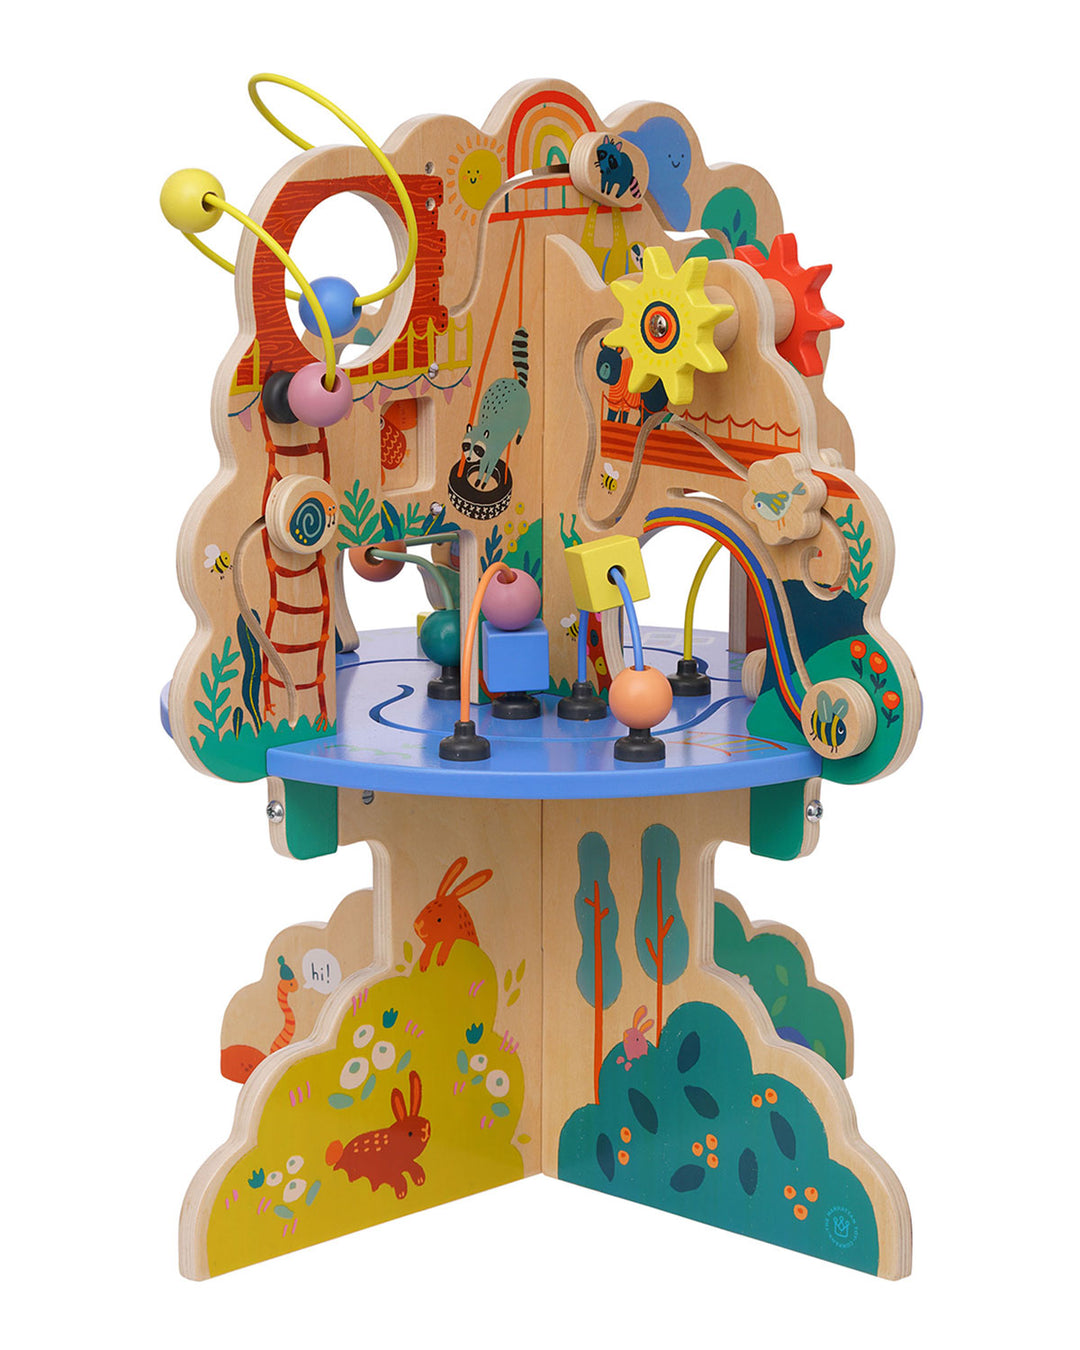 Manhattan Toy Playground Adventure Wooden Activity Center